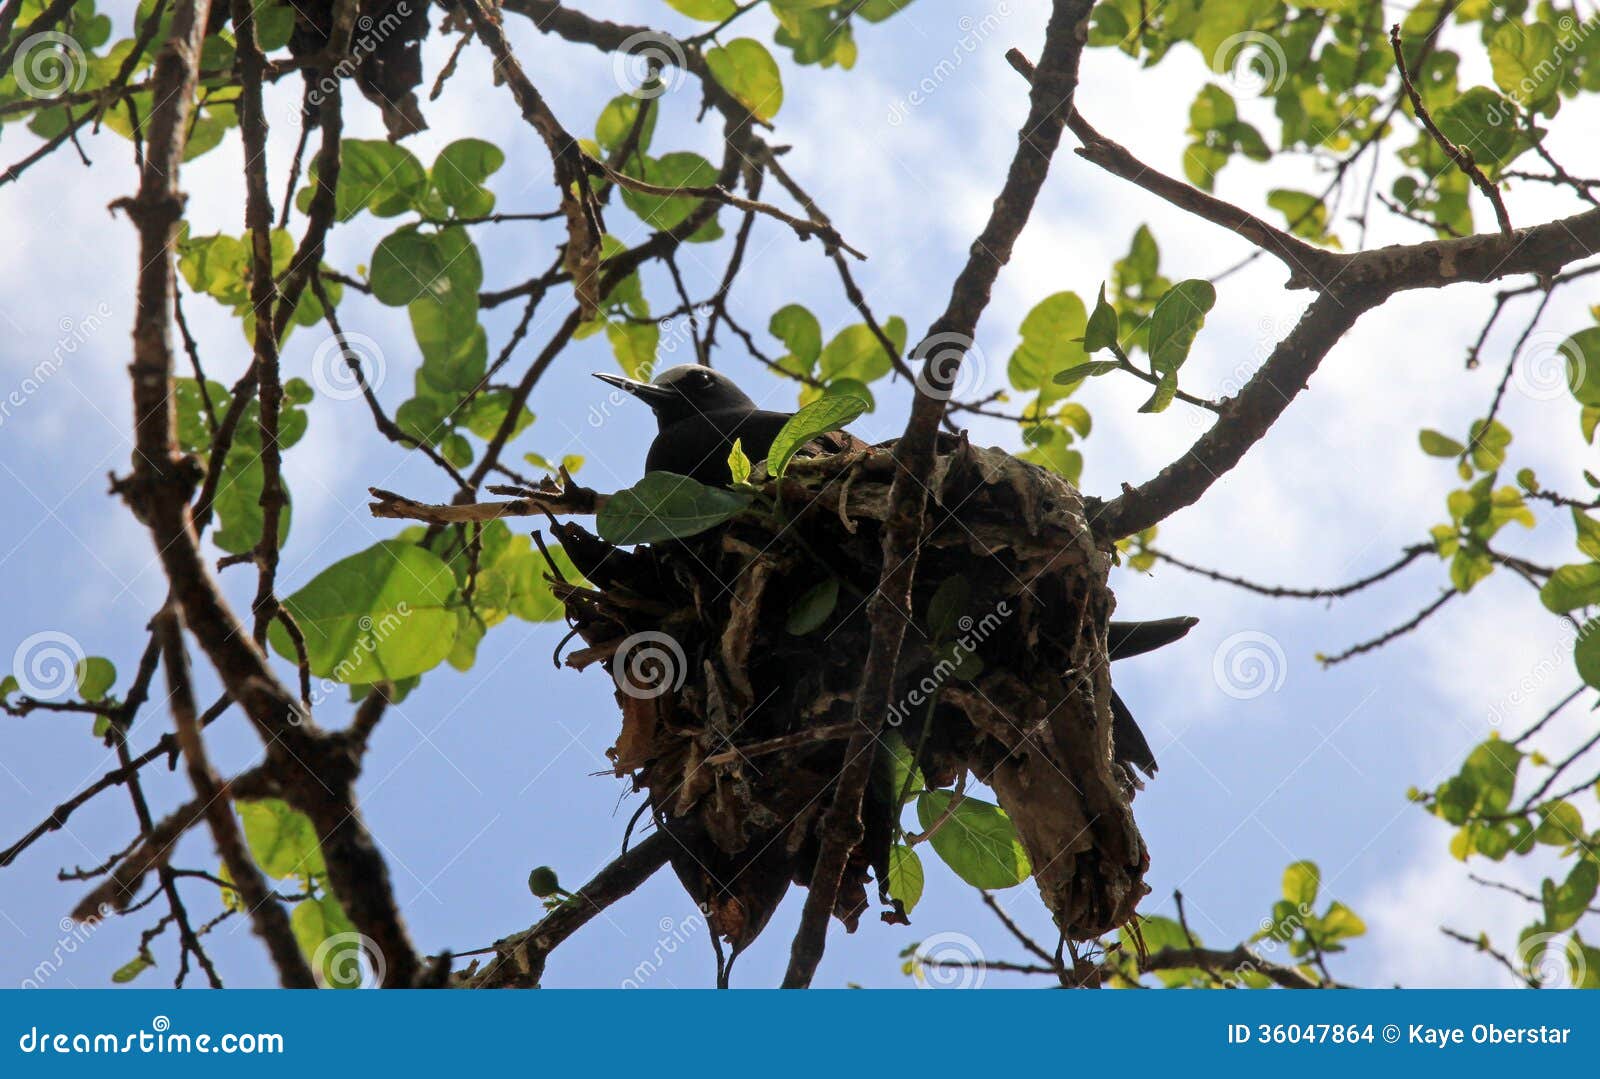 black noddy nesting